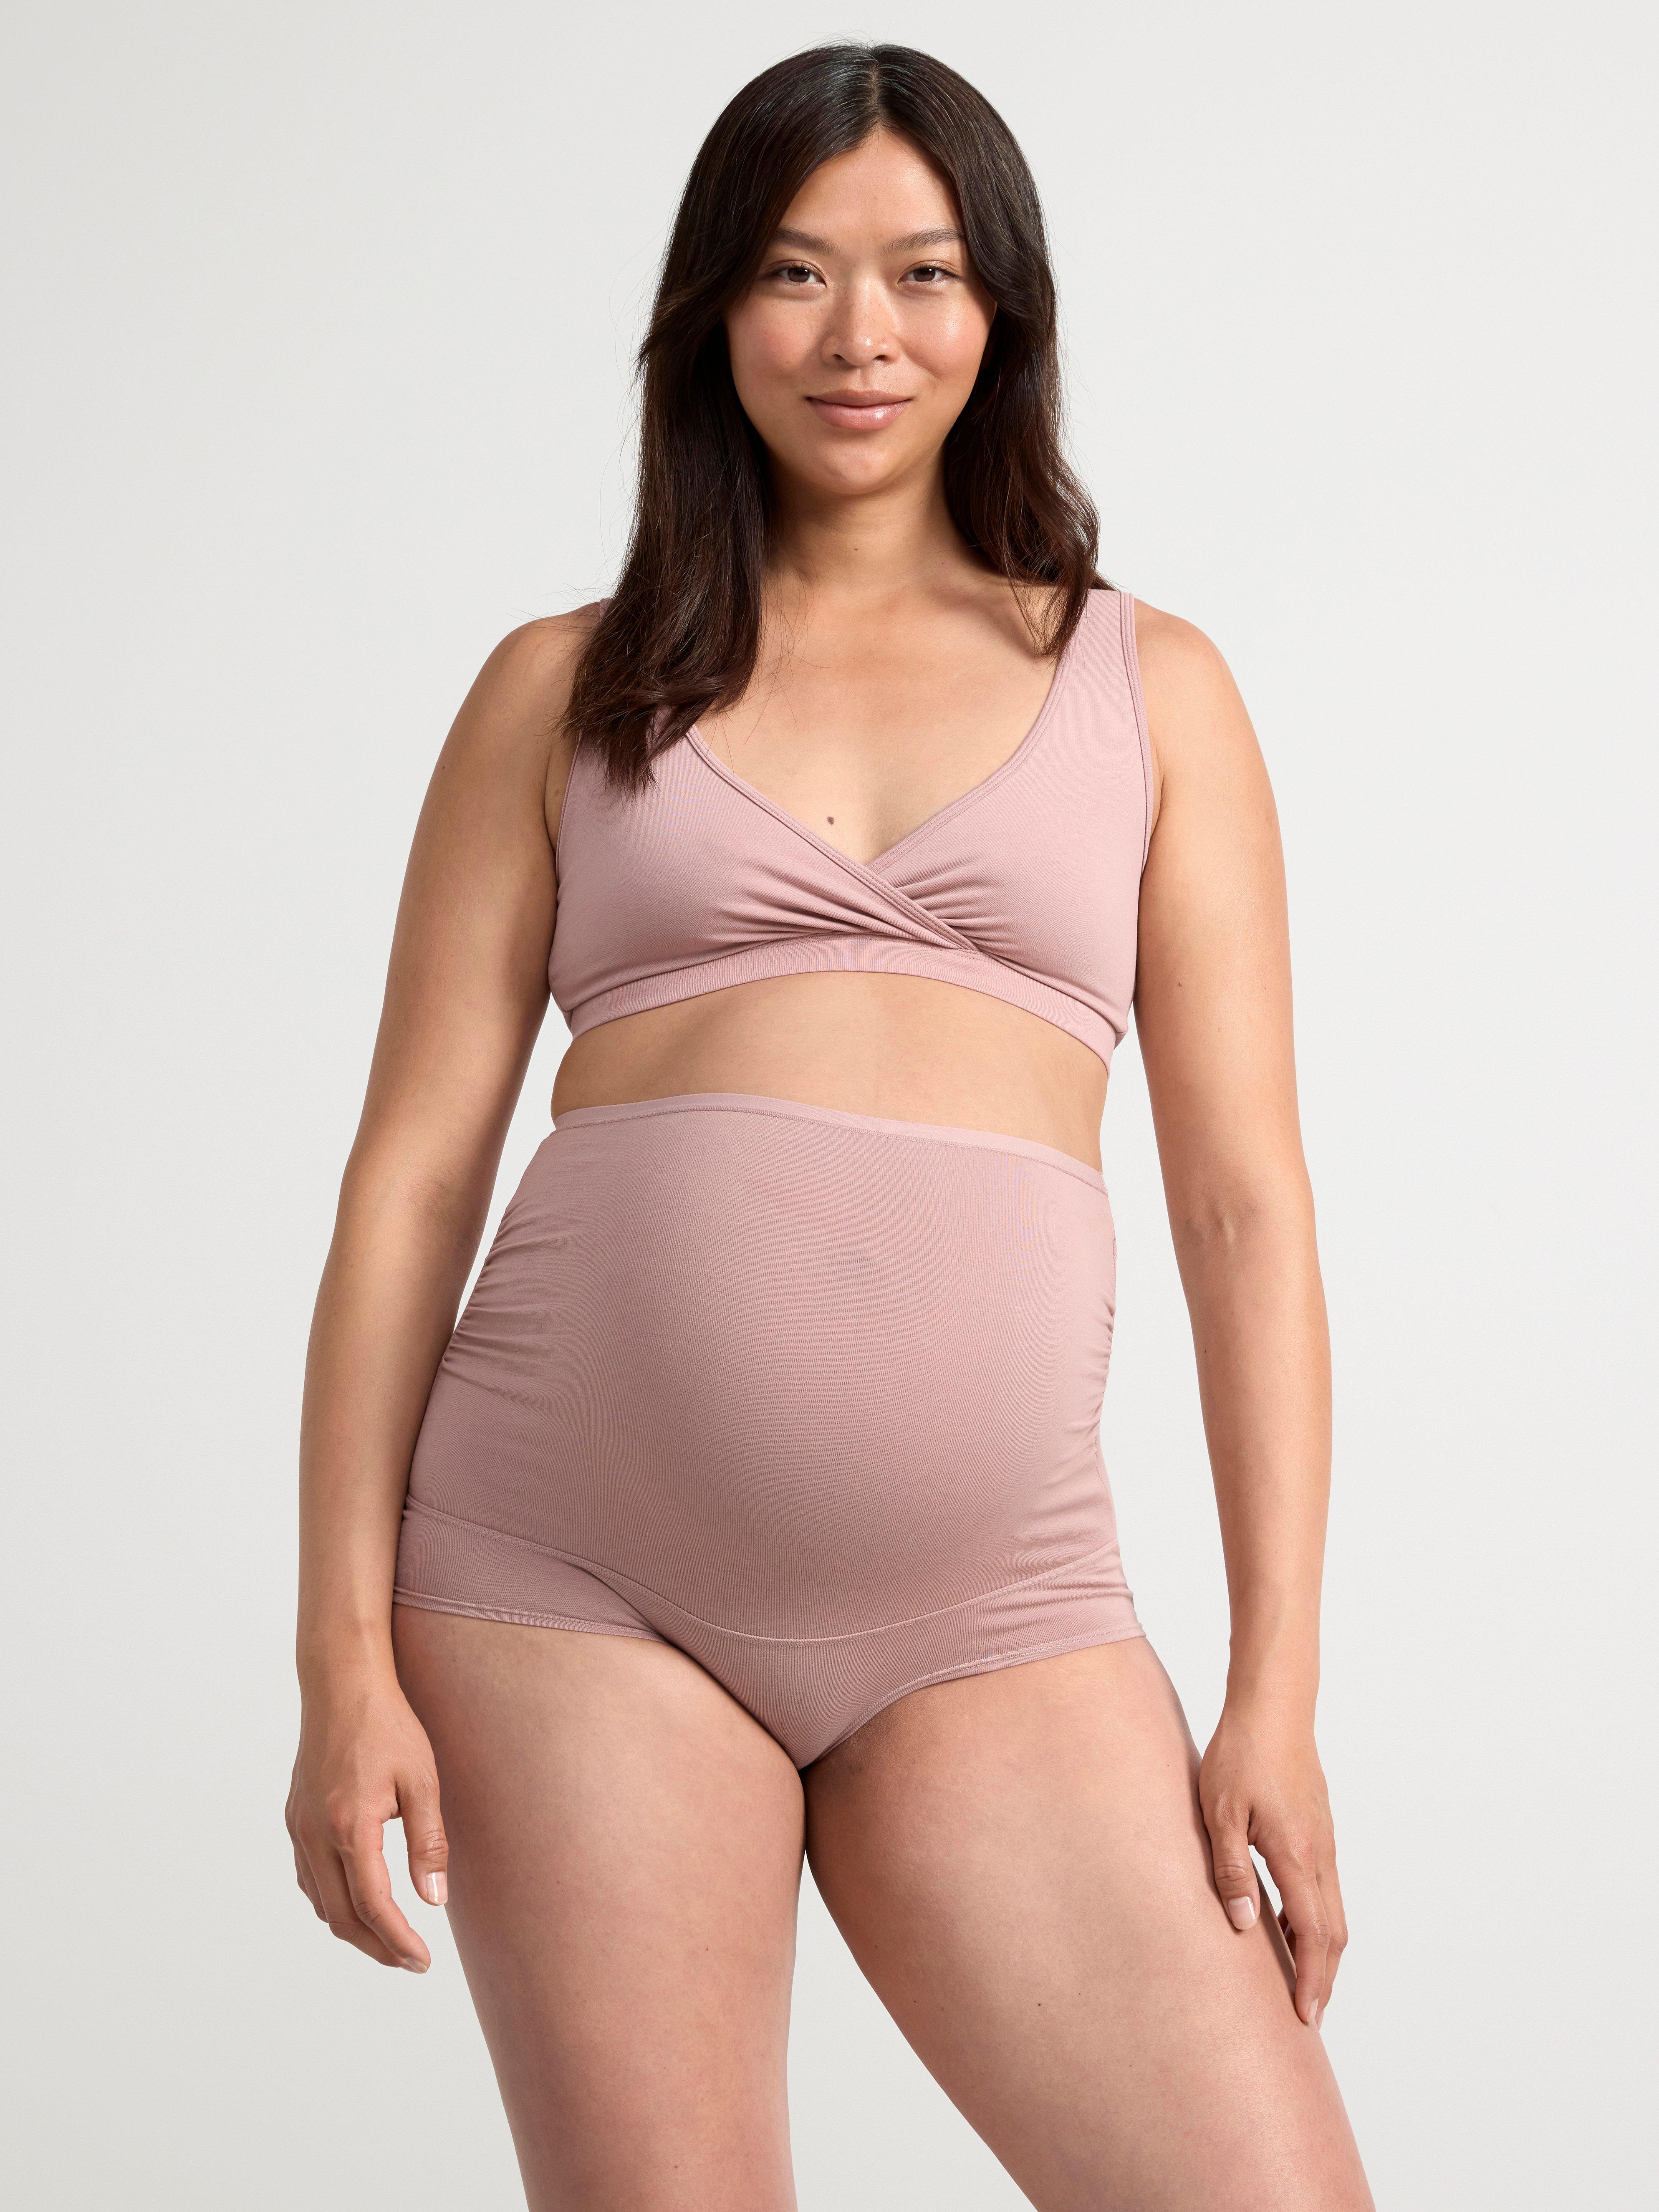 Buy Maternity Underwear - Shop Online